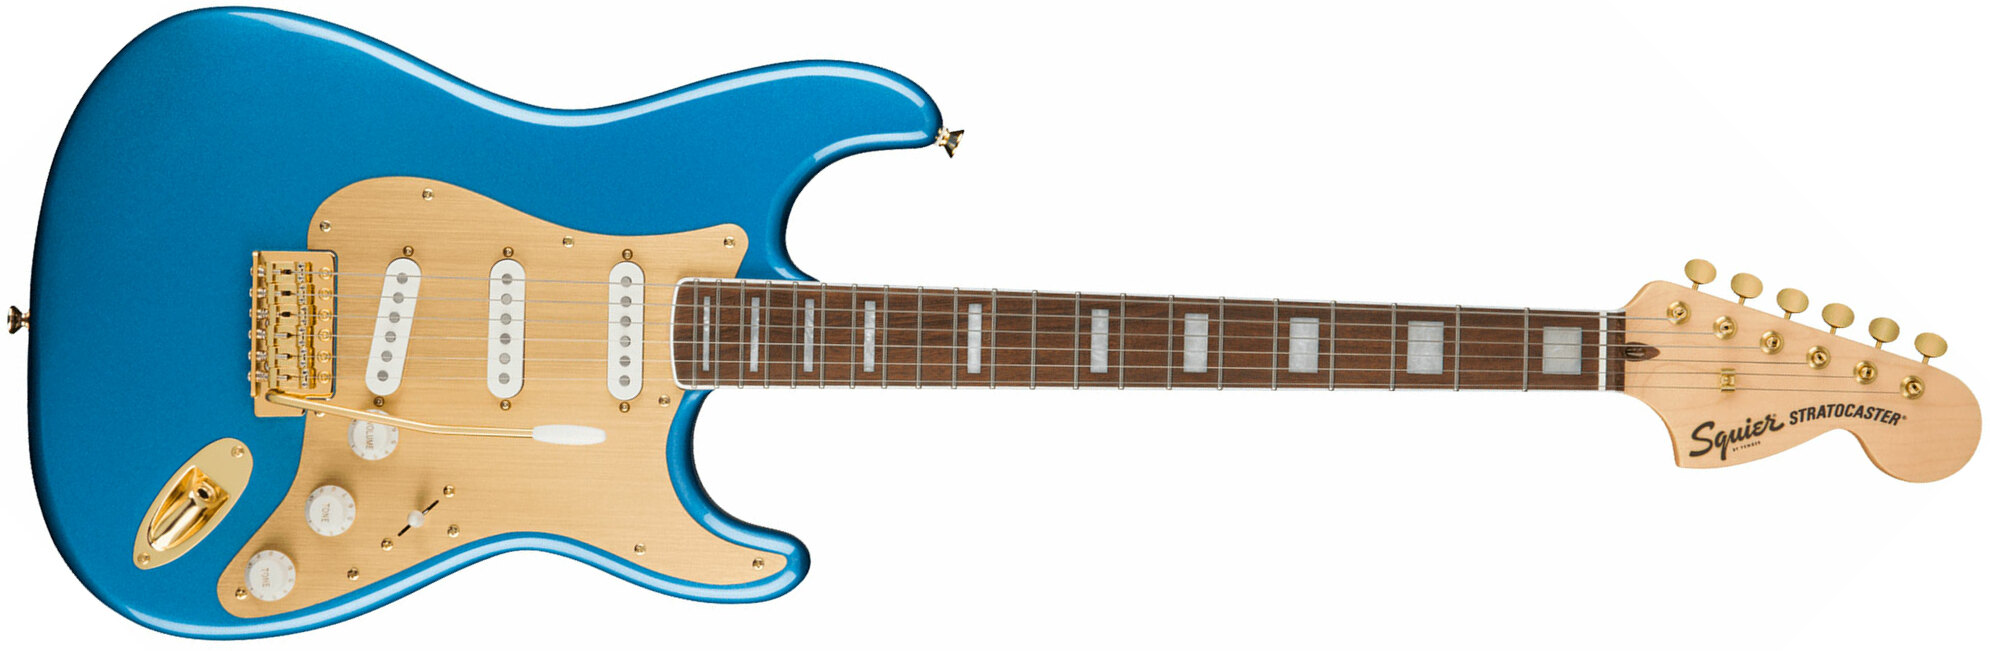 Squier Strat 40th Anniversary Gold Edition Lau - Lake Placid Blue - Elektrische gitaar in Str-vorm - Main picture